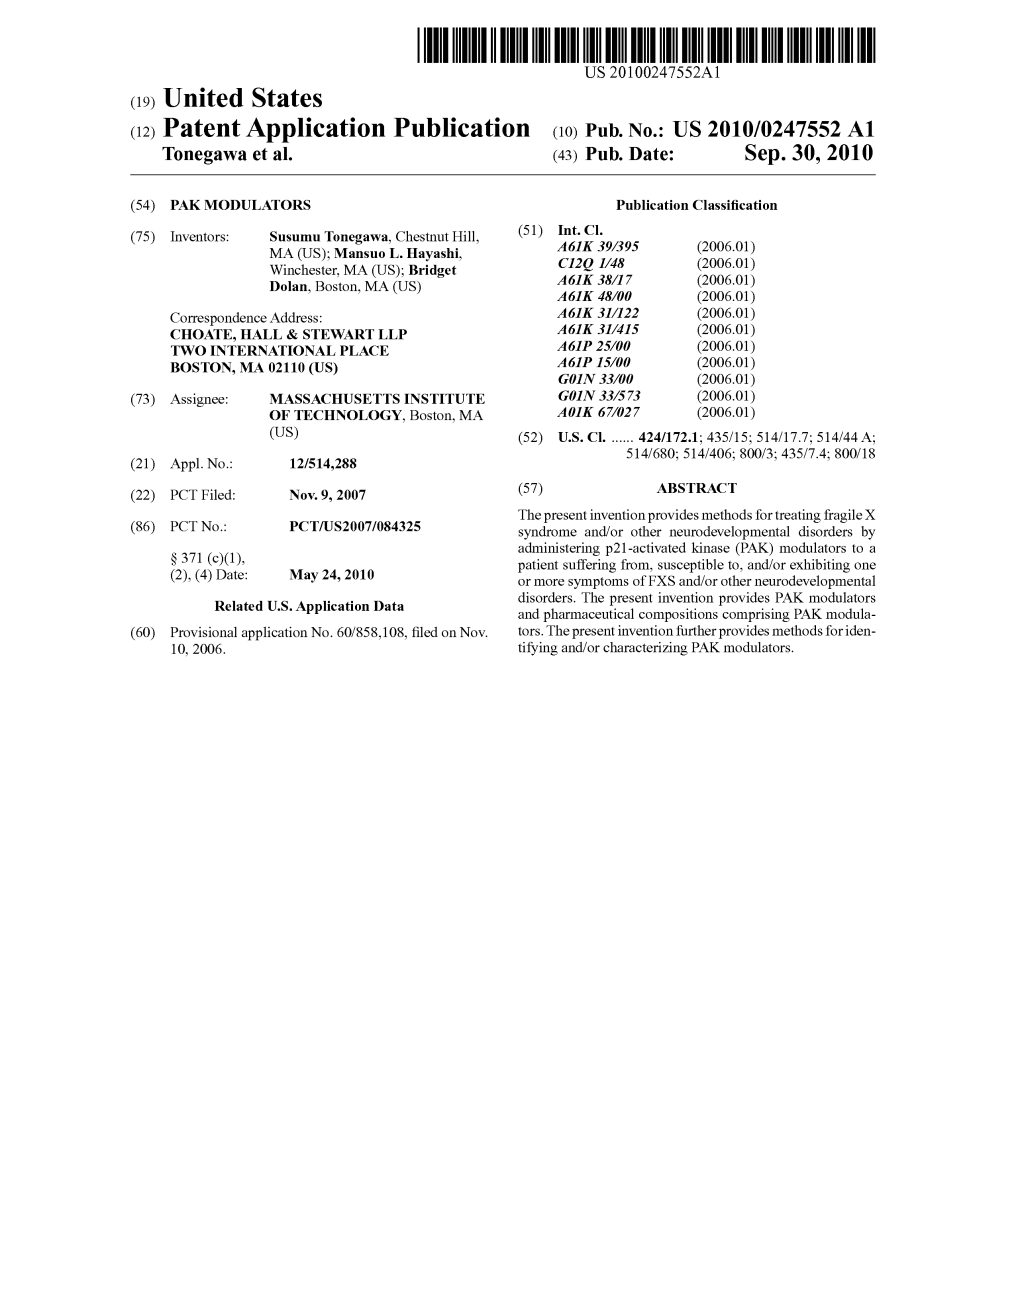 (12) Patent Application Publication (10) Pub. No.: US 2010/0247552 A1 Tonegawa Et Al